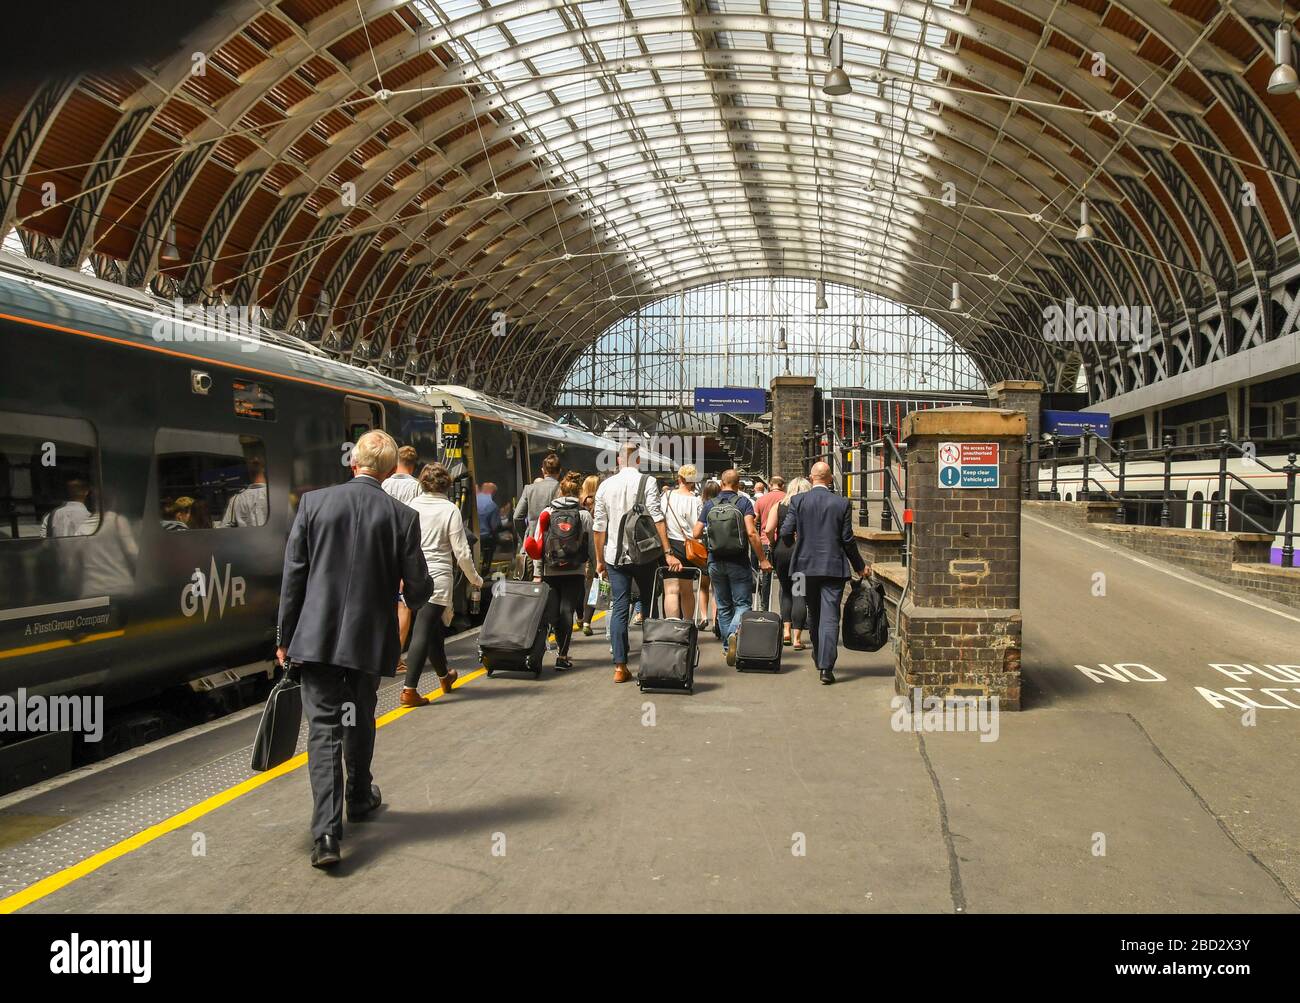 LONDON, ENGLAND - JULI 2018: Weitwinkelansicht der Menschen, die auf einem Bahnsteig am Bahnhof London Paddington gehen, um einen Zug zu nehmen Stockfoto